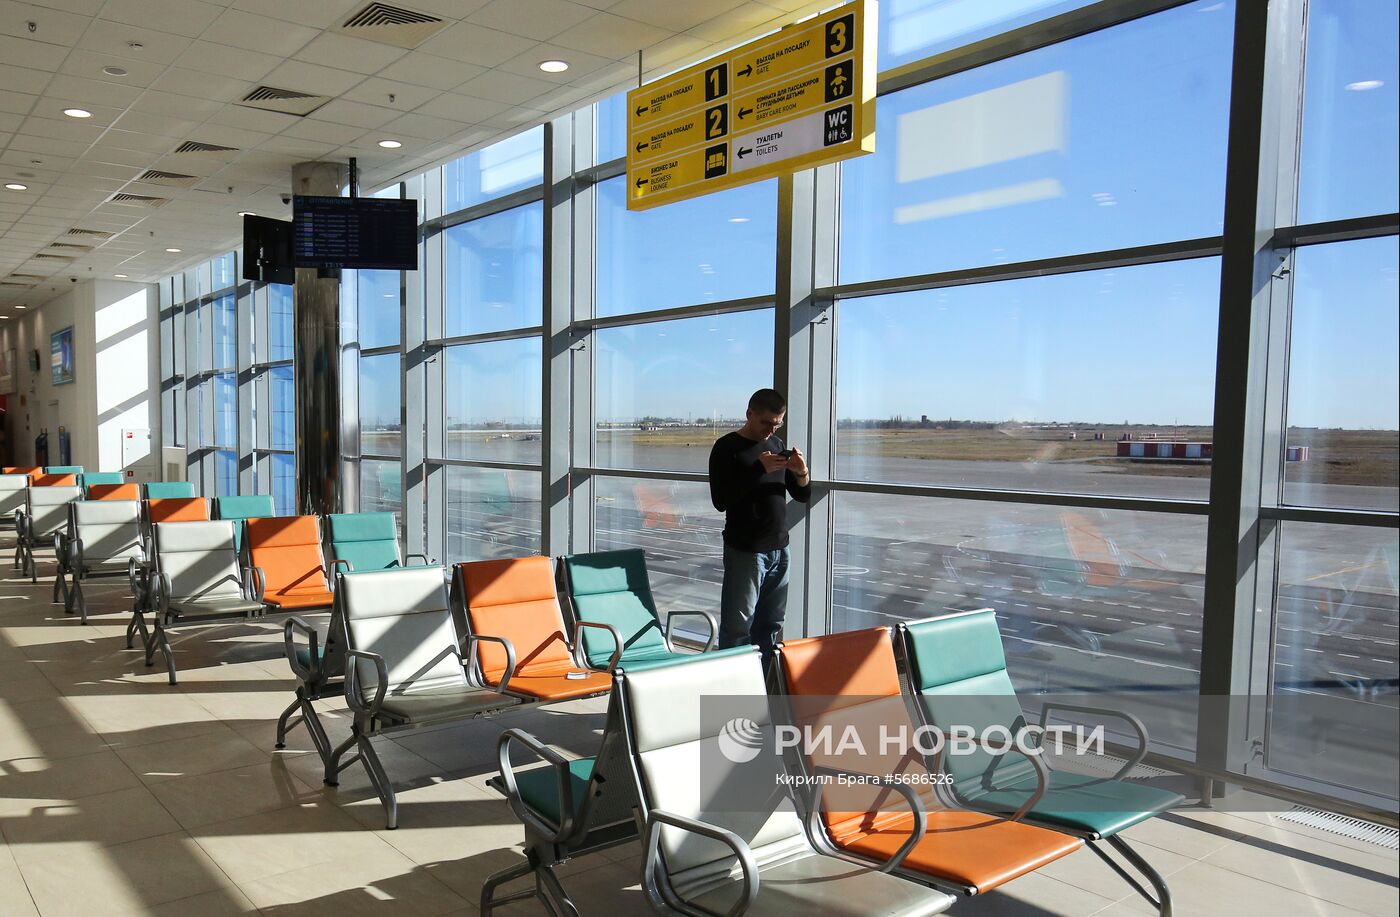 Международный аэропорт Волгоград 